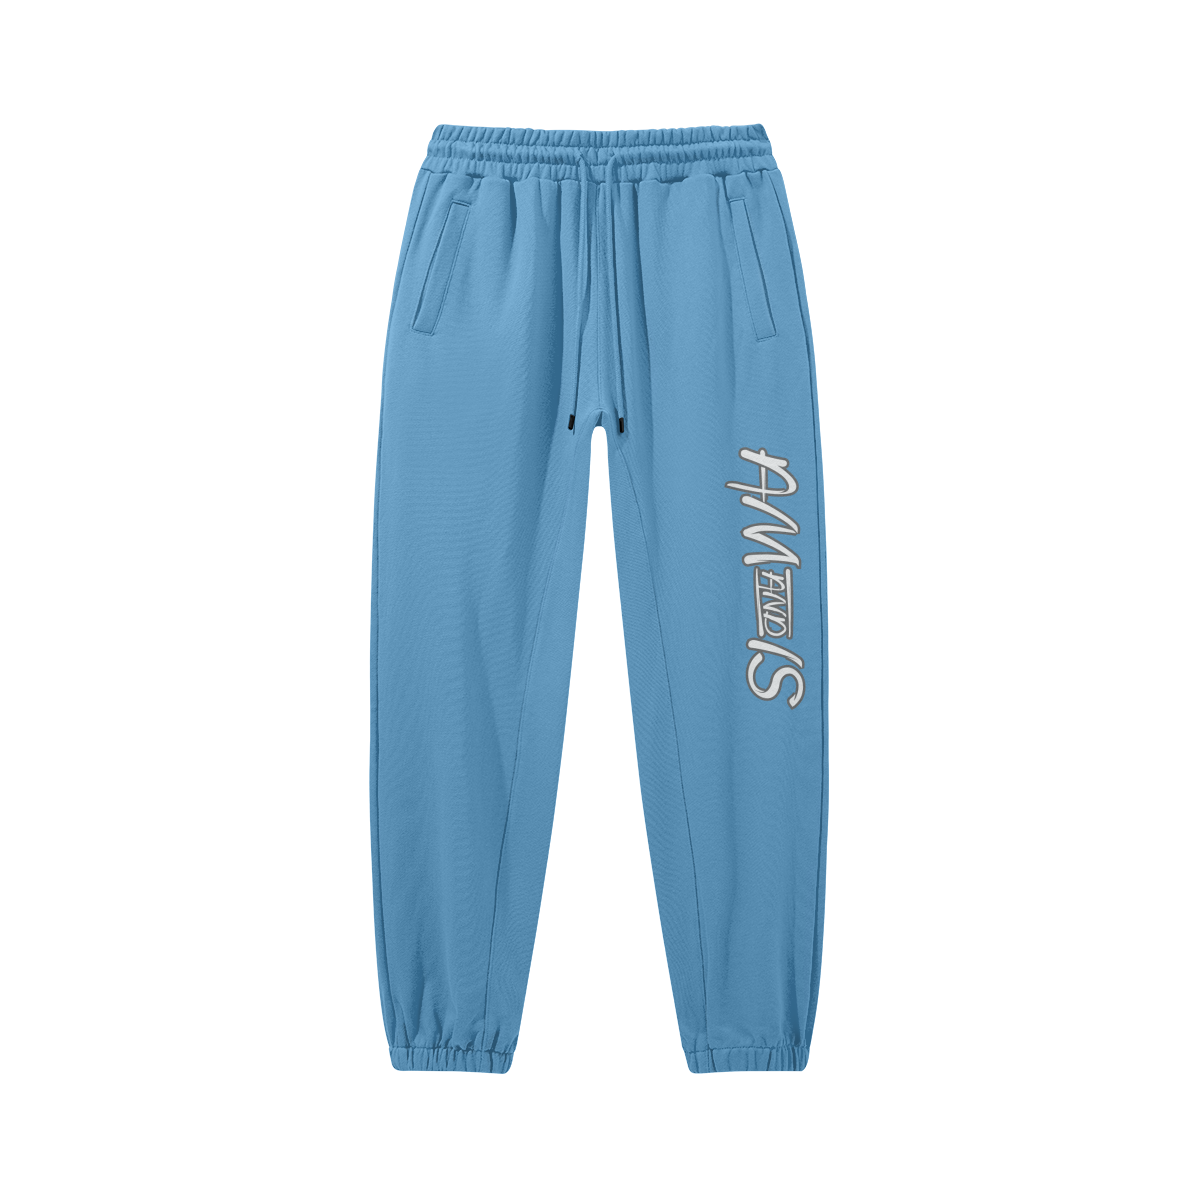 Pastel Blue - Am&Is Unisex Heavyweight Baggy Sweatpants0 - unisex pants at TFC&H Co.